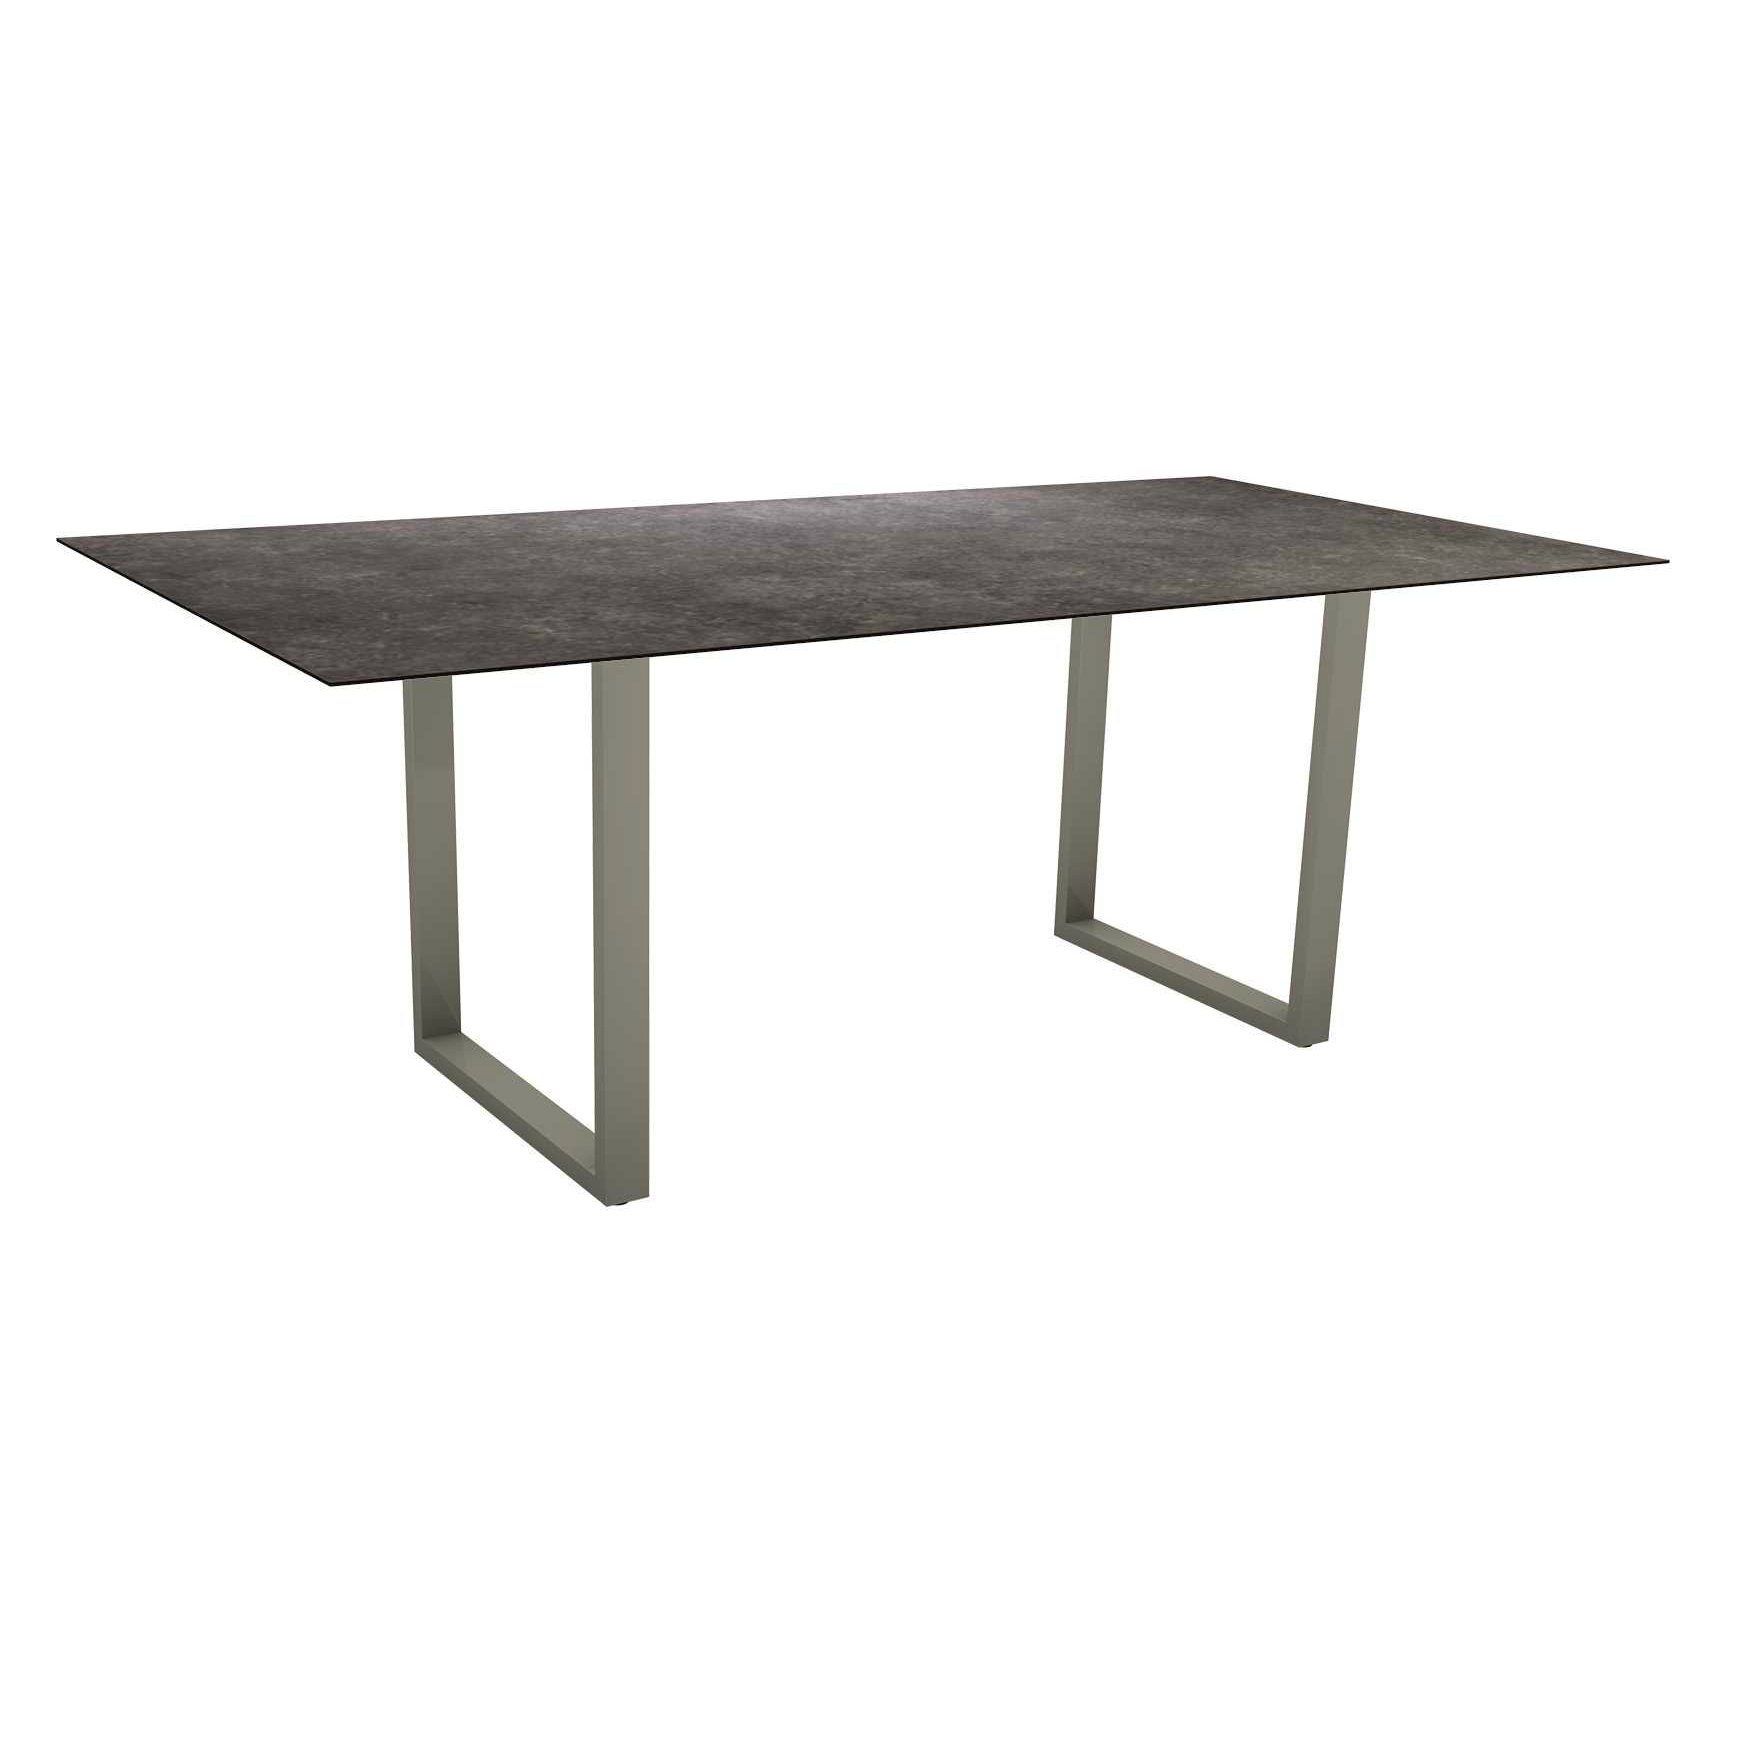 Stern Kufentisch, Maße: 200x100x73 cm, Gestell Aluminium graphit, Tischplatte HPL Vintage grau